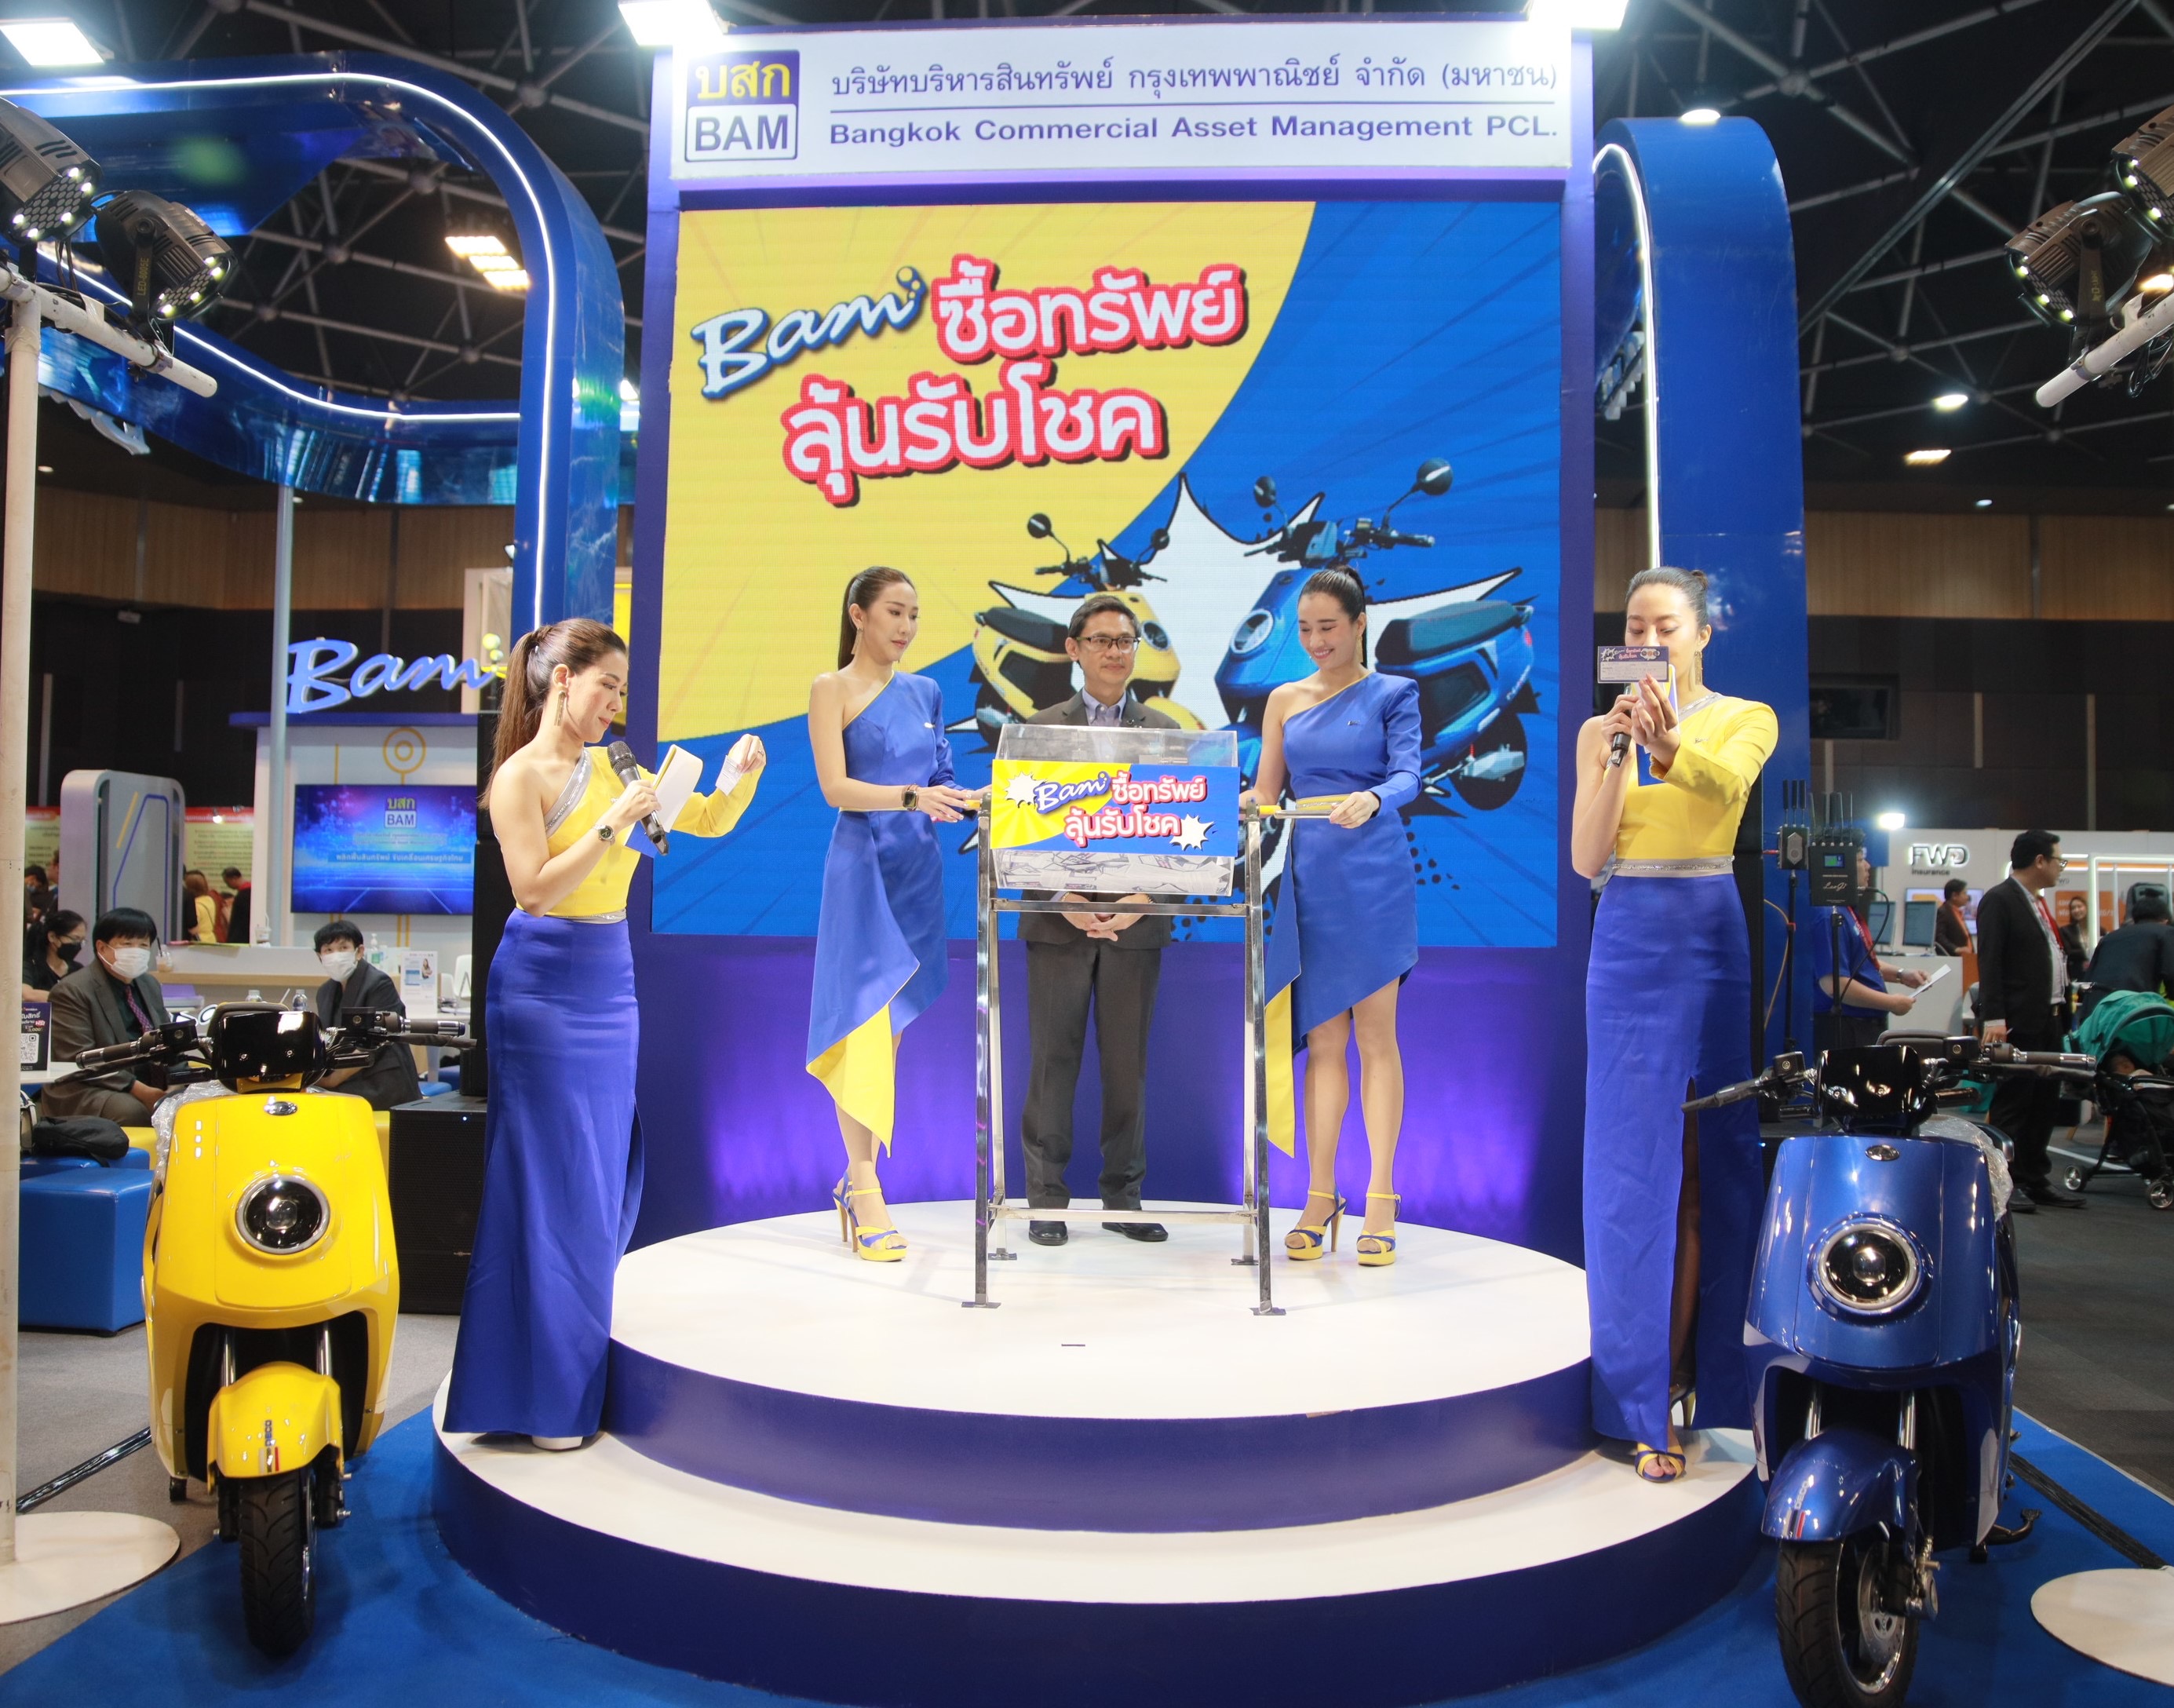 BAM ออกบูธงาน “Thailand  Smart Money” ครั้งที่ 14 พร้อมจับรางวัลจักรยานยนต์ไฟฟ้า DECO รุ่น Luciano